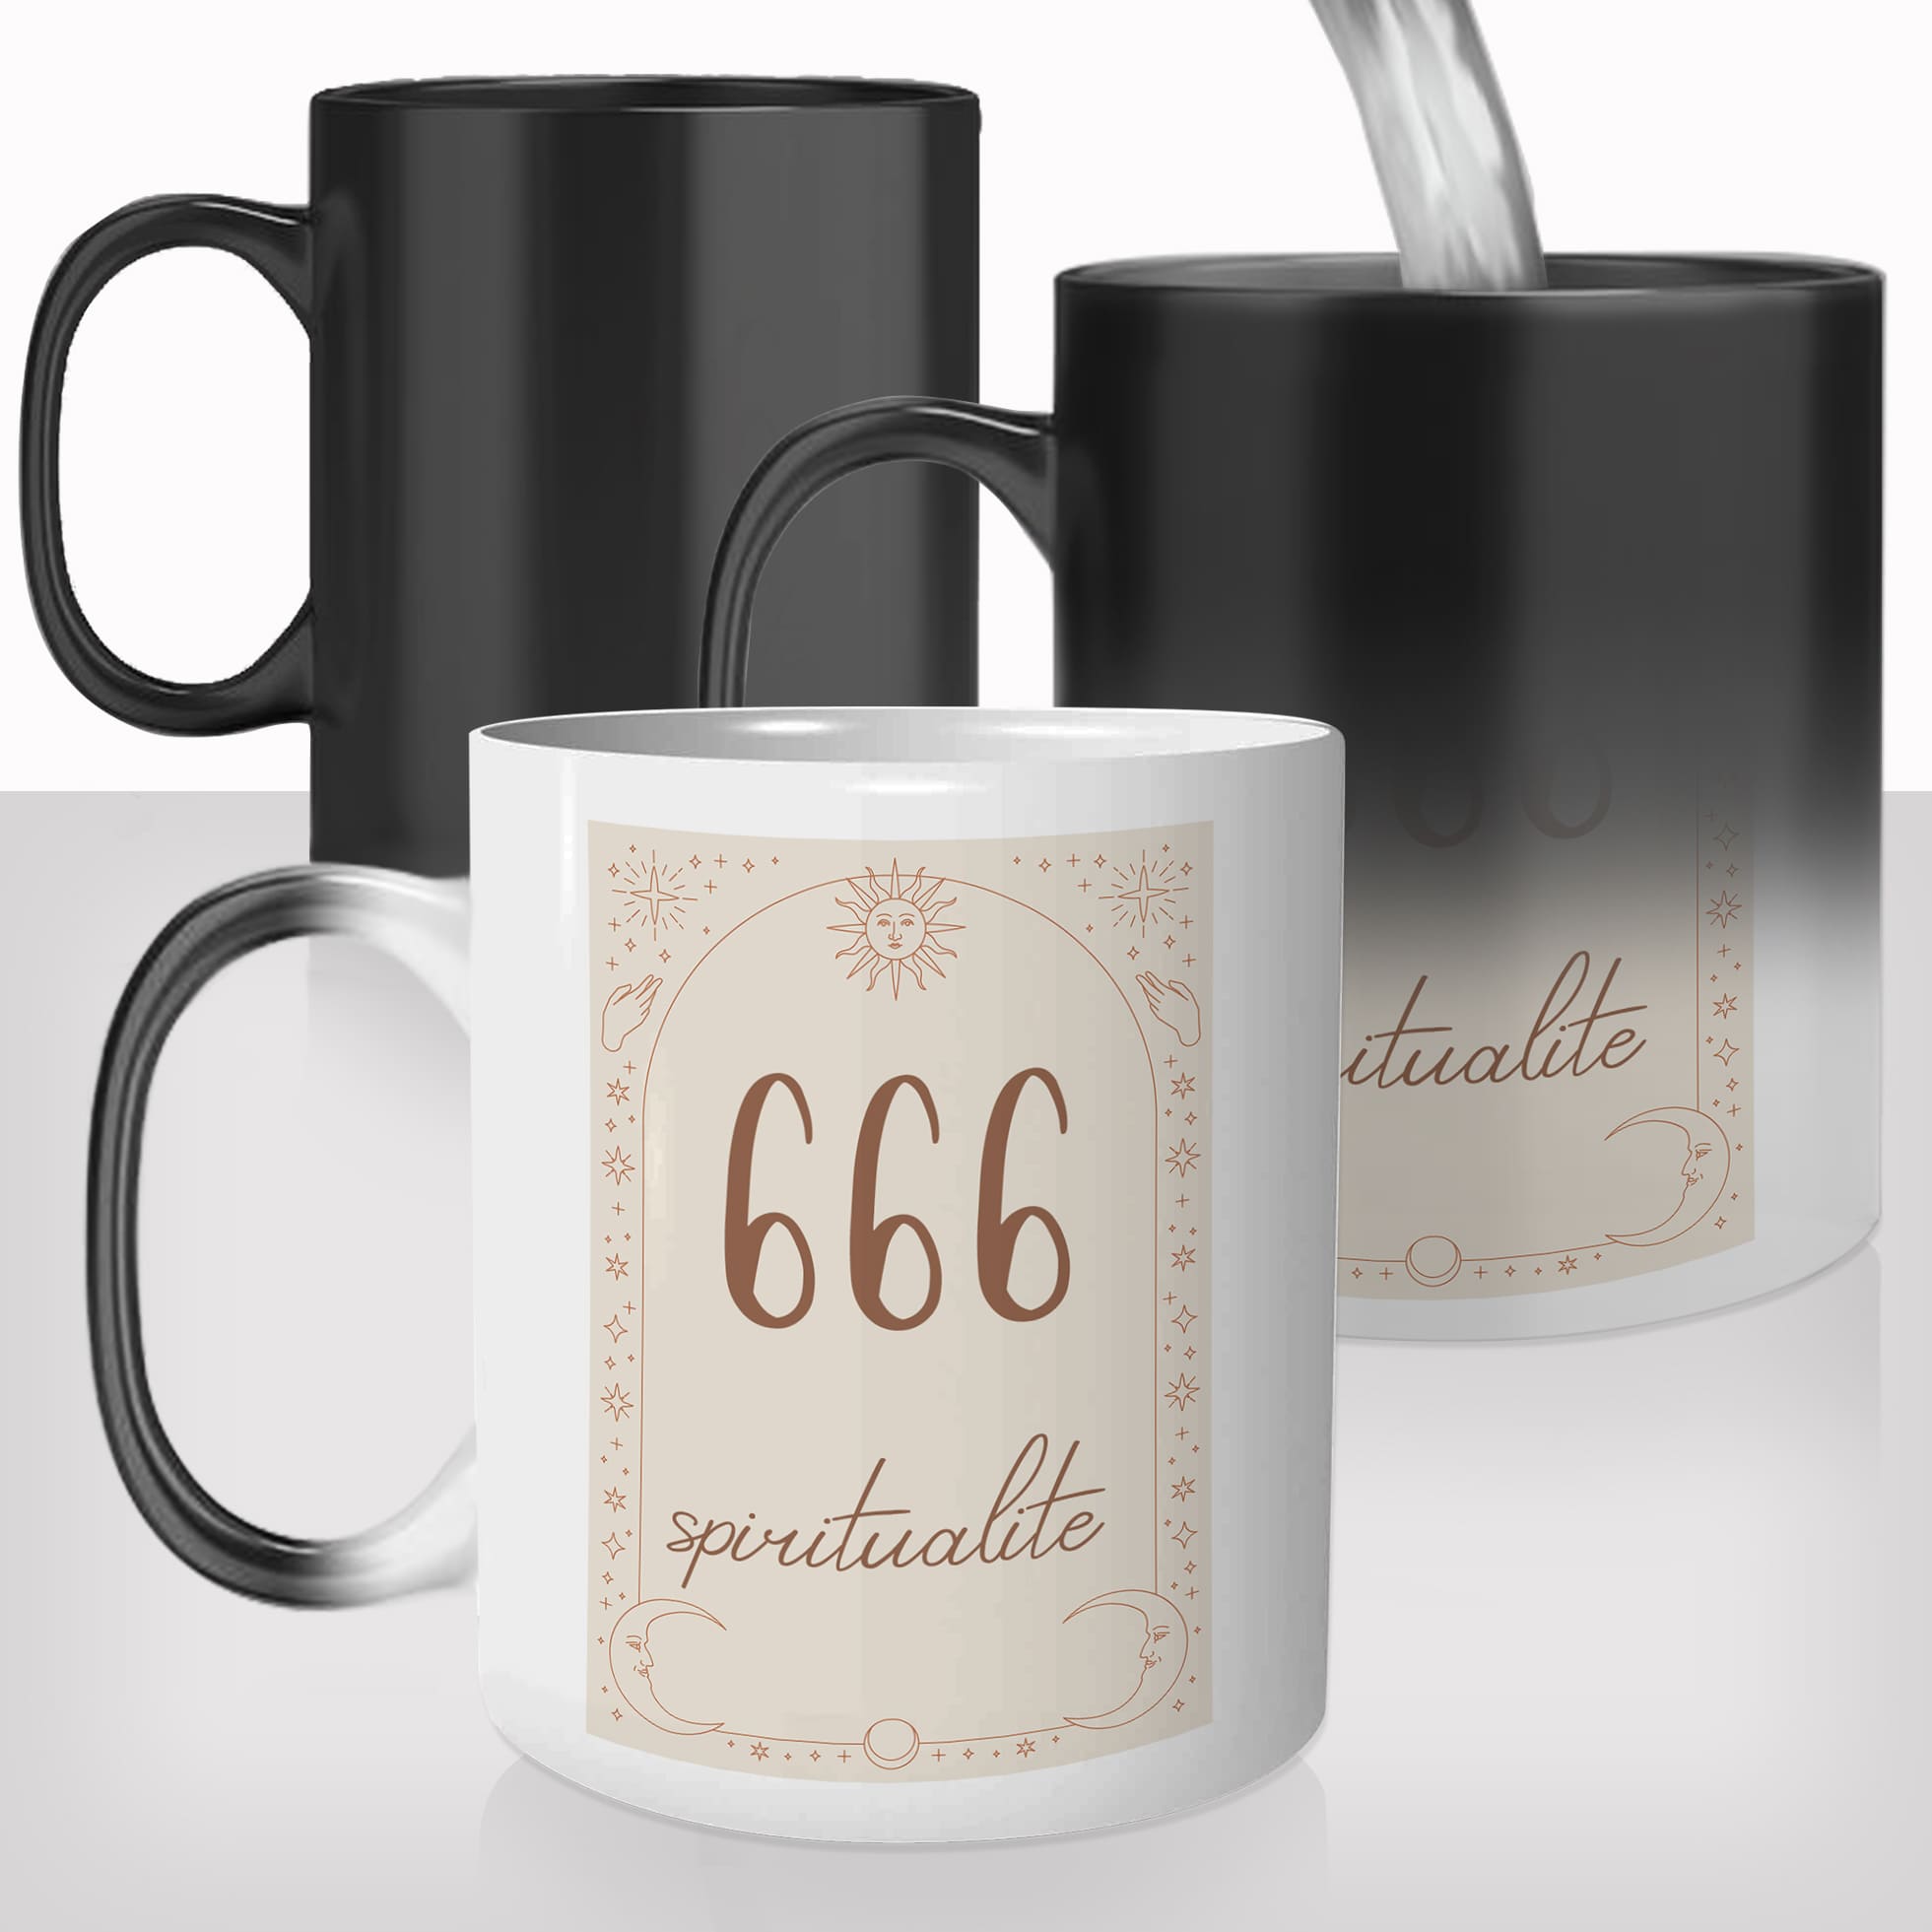 Mug Magique 666 - Spiritualité